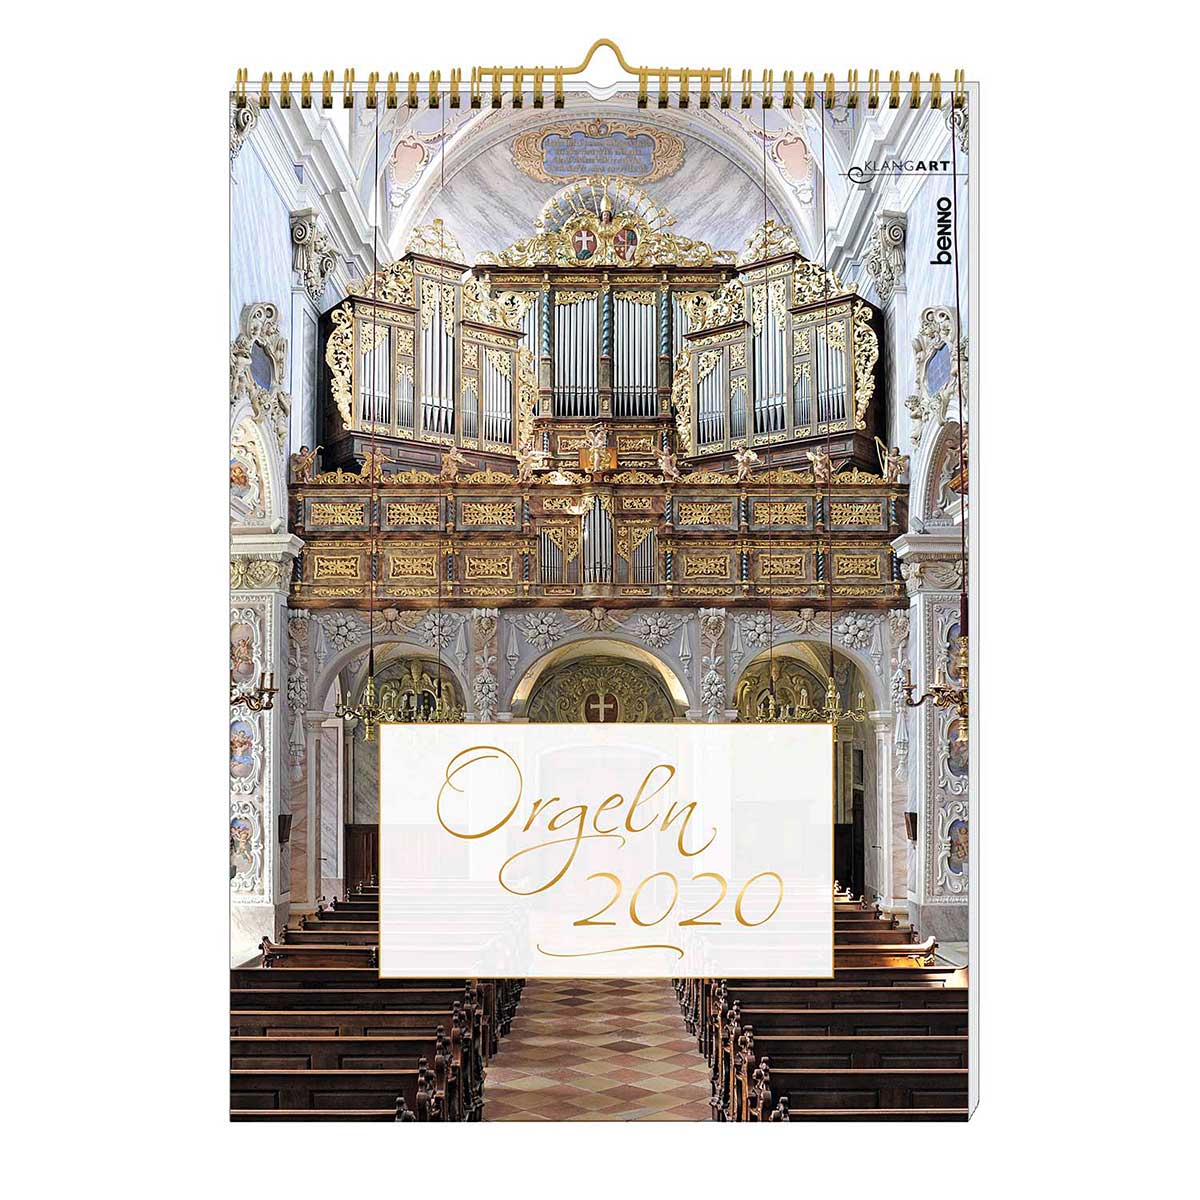 Orgeln 2020, St. Benno-Verlag, Leipzig